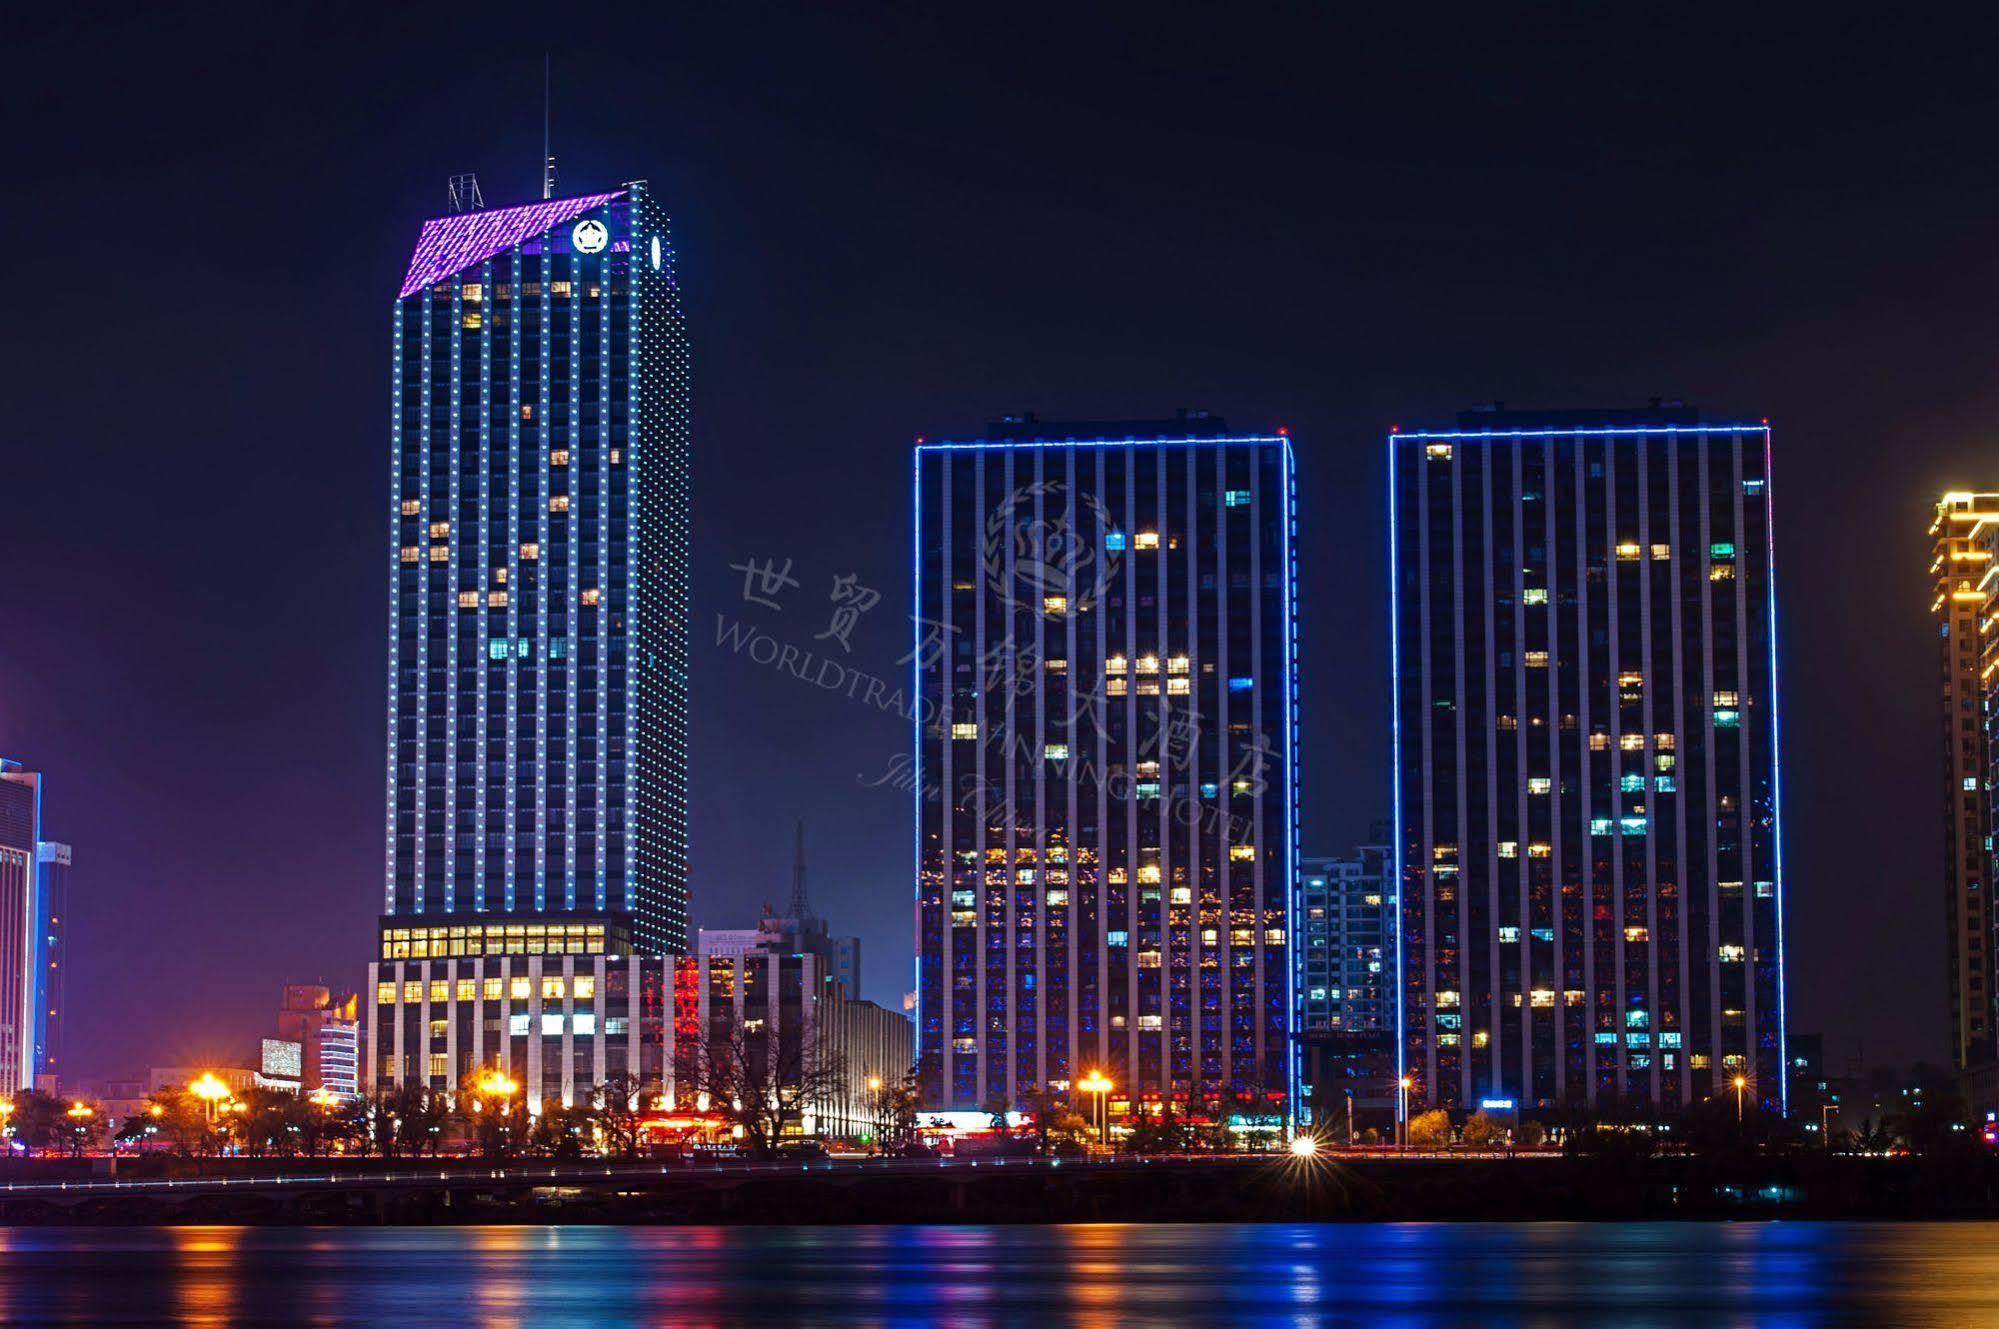 World Trade Winning Hotel Jilin ภายนอก รูปภาพ